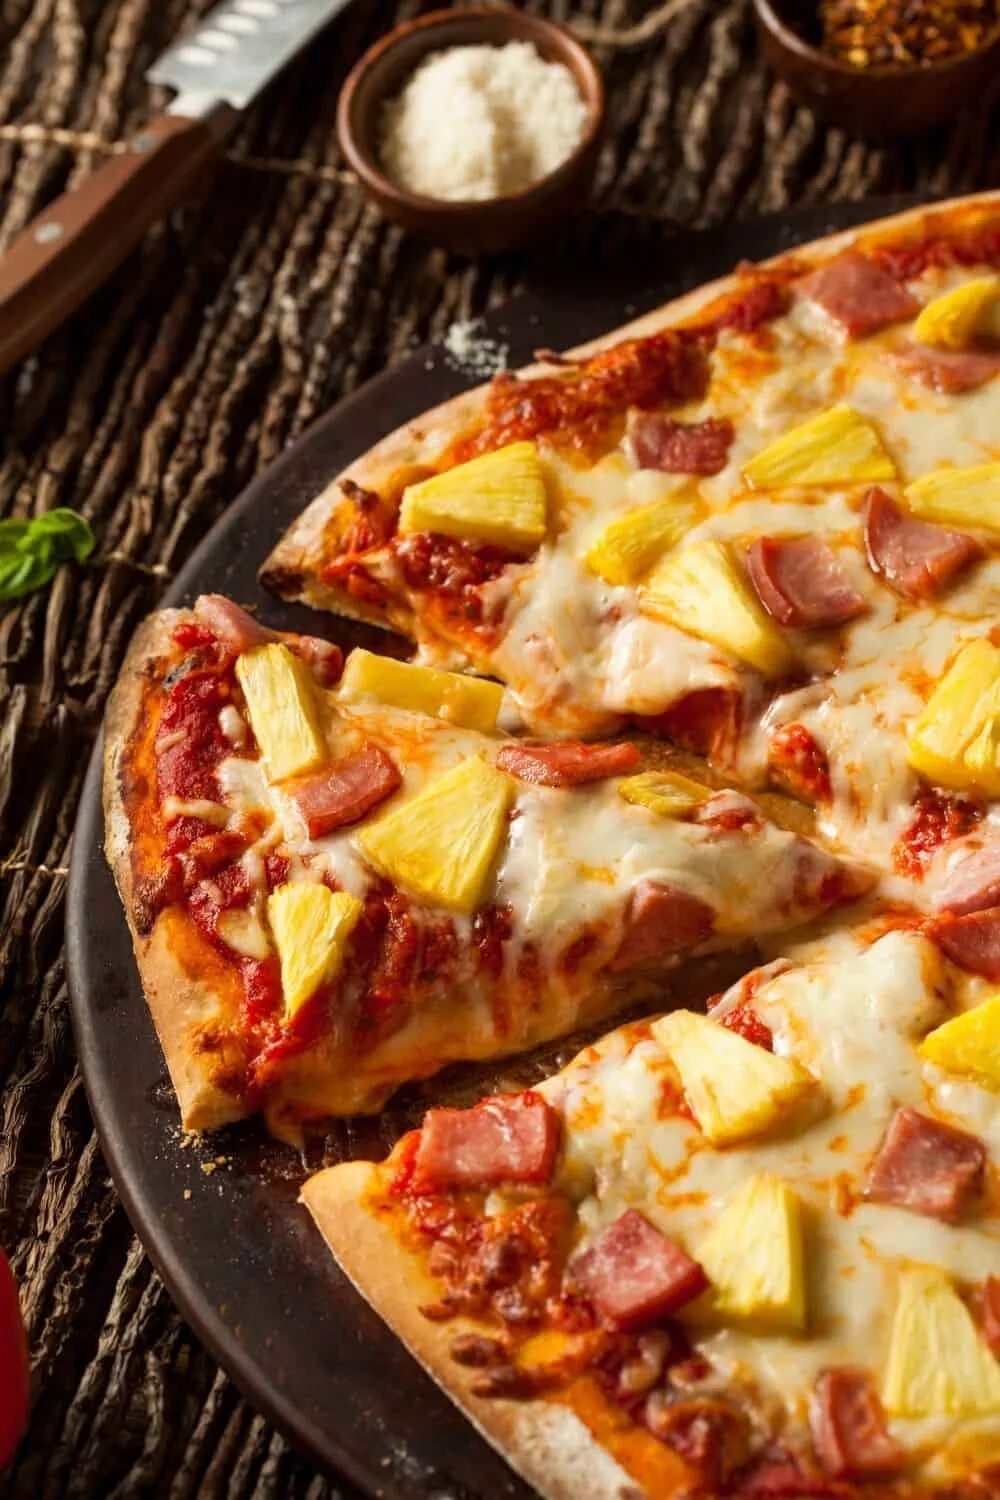 Pizza ready бесплатные покупки. Пицца с ананасами. Пицца с кокосом. Пицца с ананасами красивые фото. Пицца с ананасами фото из ресторана.